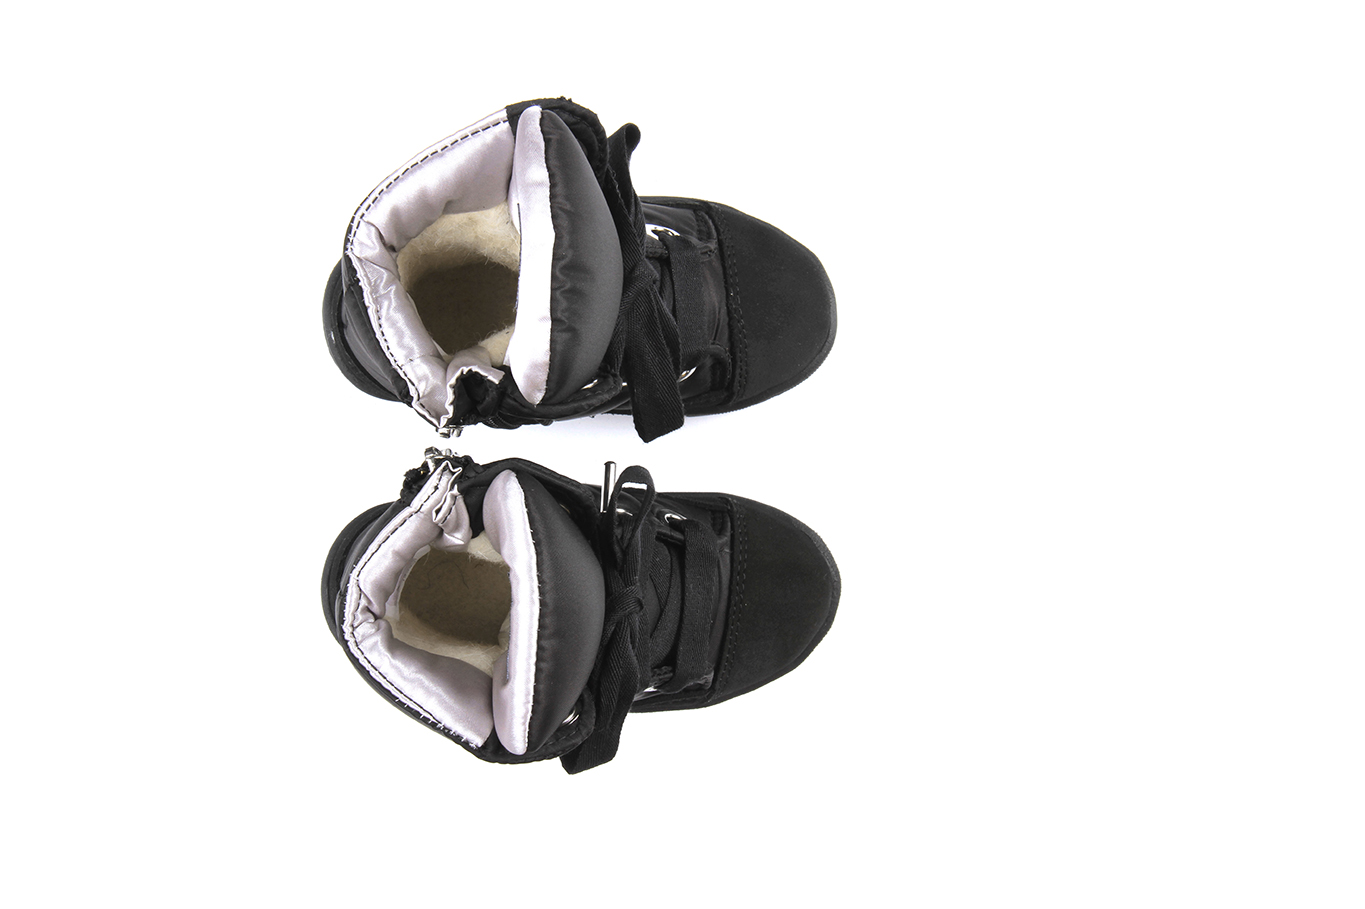 ботинки 13008R черный динамик-серебро, фото 3